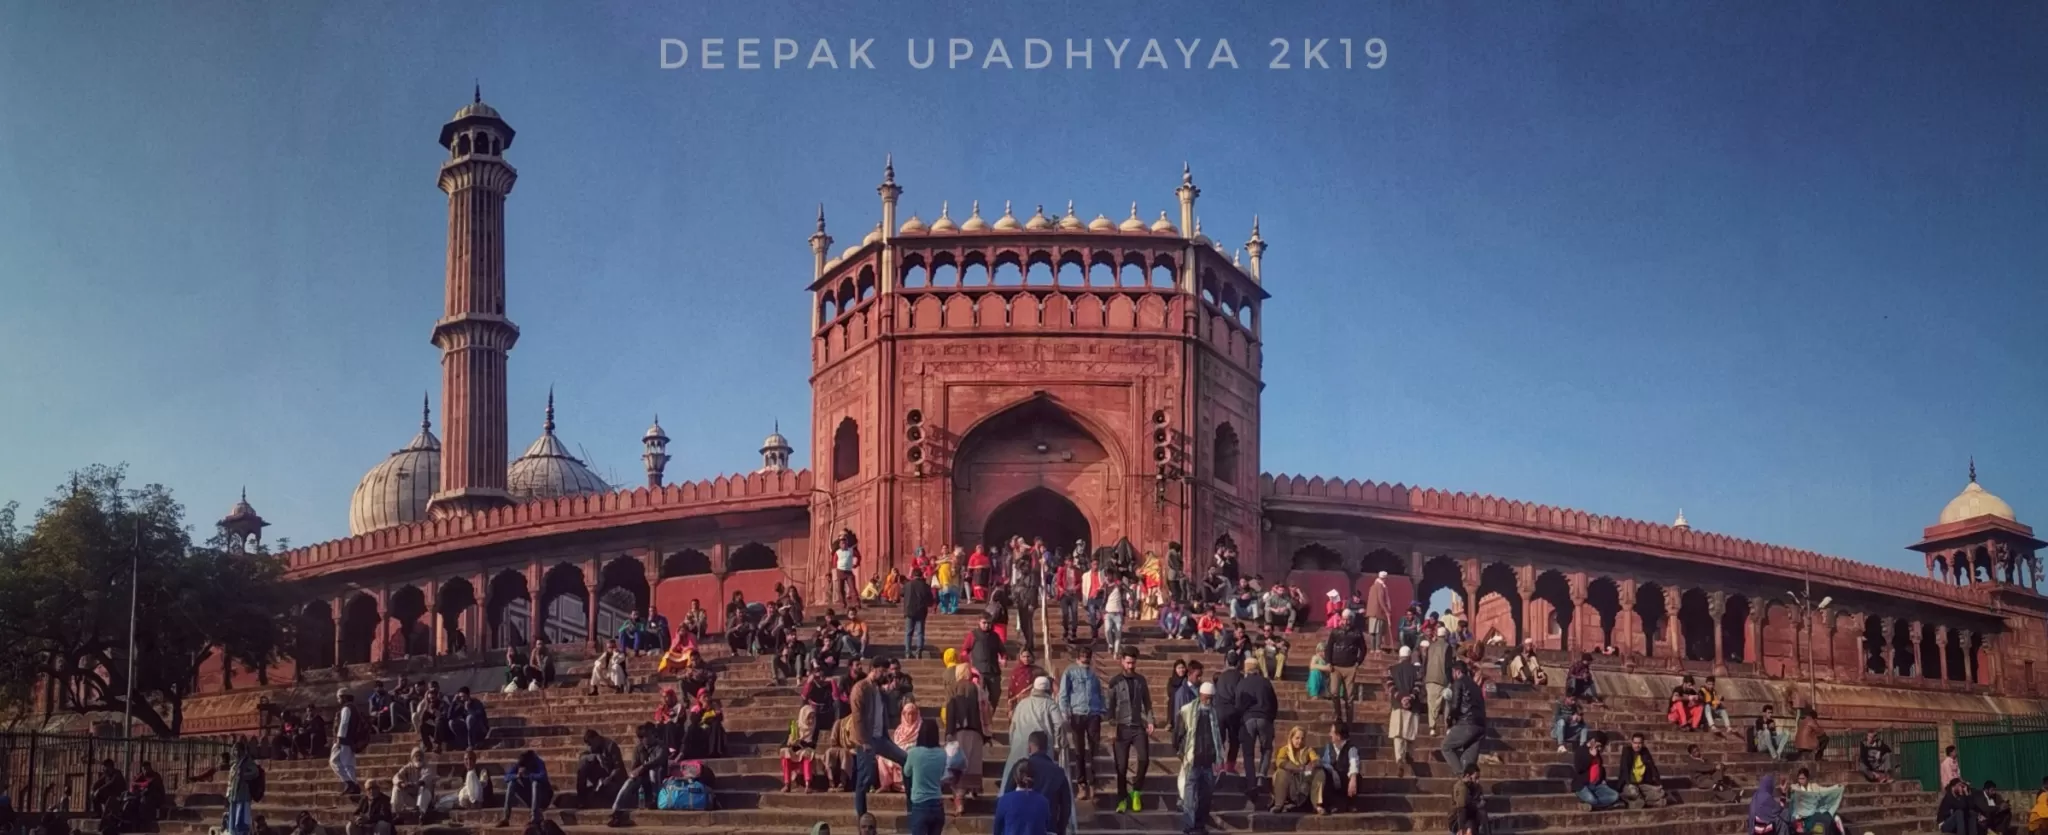 Cover Image of Deepak Upadhyaya